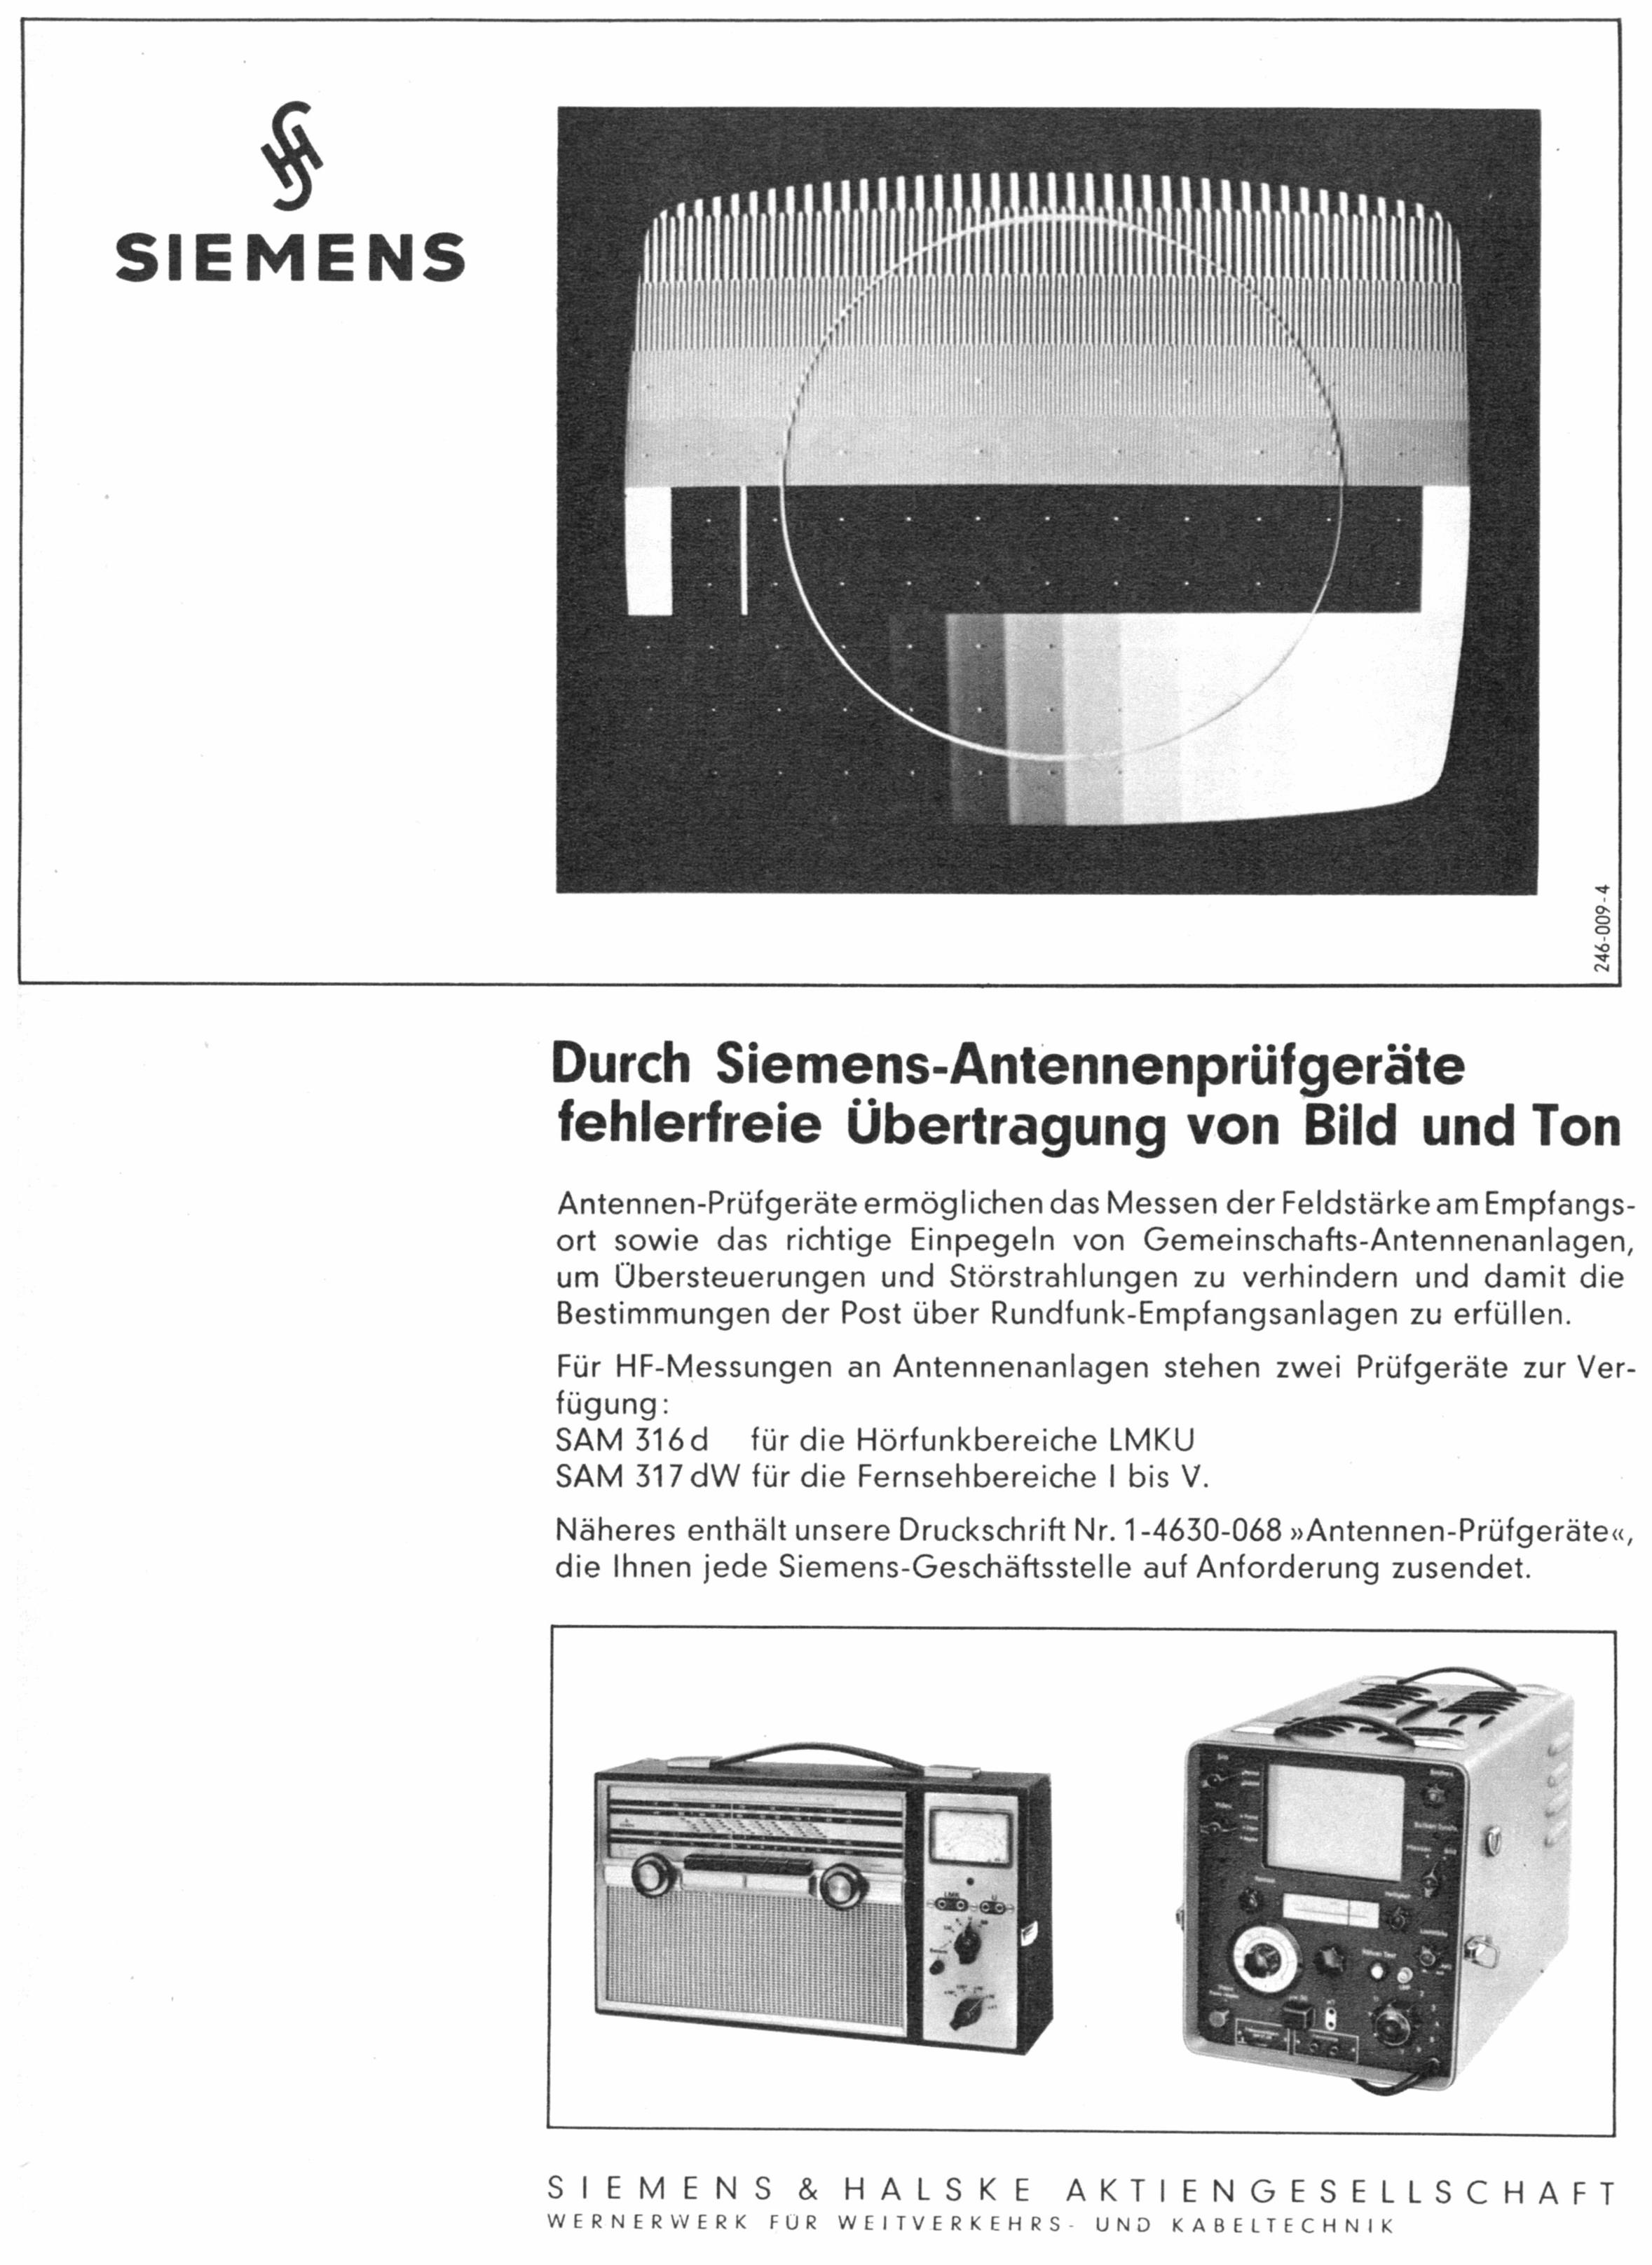 Siemens 19651.jpg